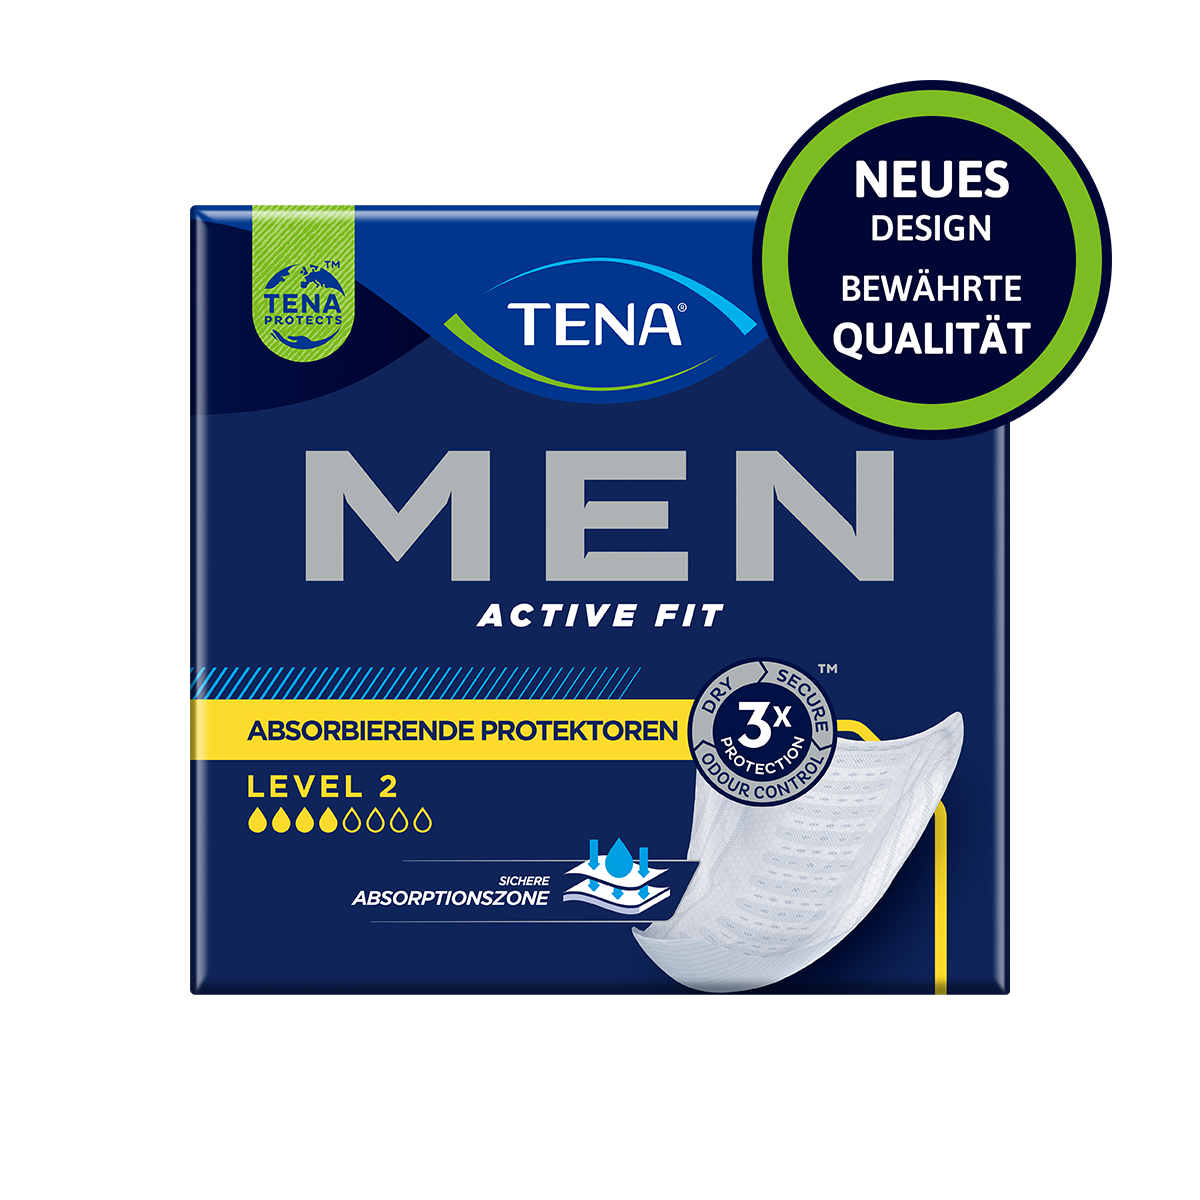 Abbildung eines Beutel der Herrenvorlage Tena Men Active Fit, Saugstärke Level 2